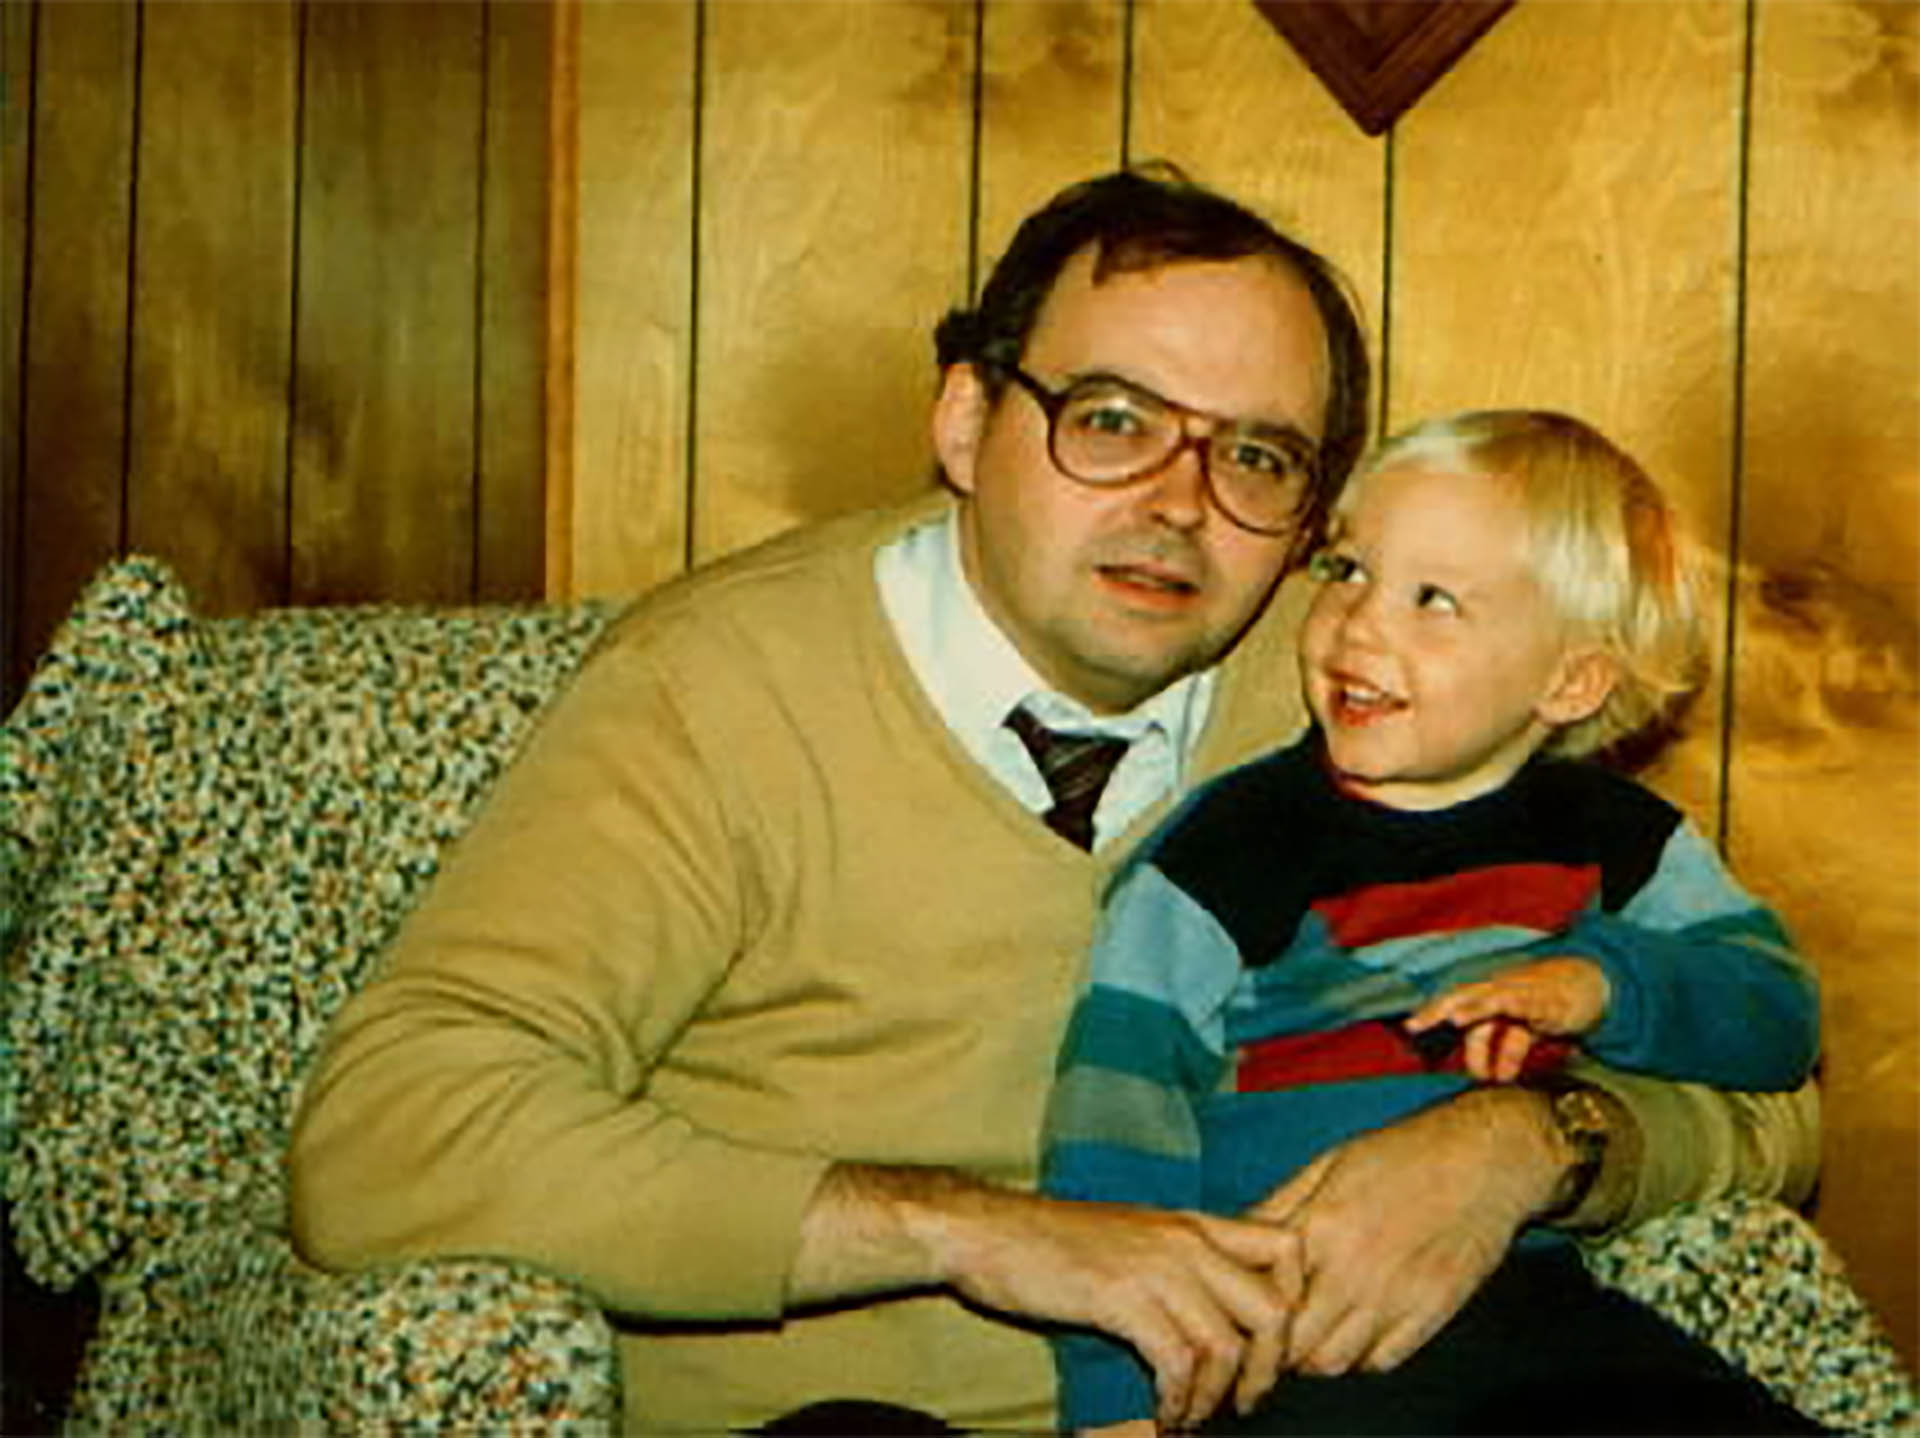 Joshua “Josh” Earl Patrick Phillips junto a Steve Phillips, su padre, cuando era un niño